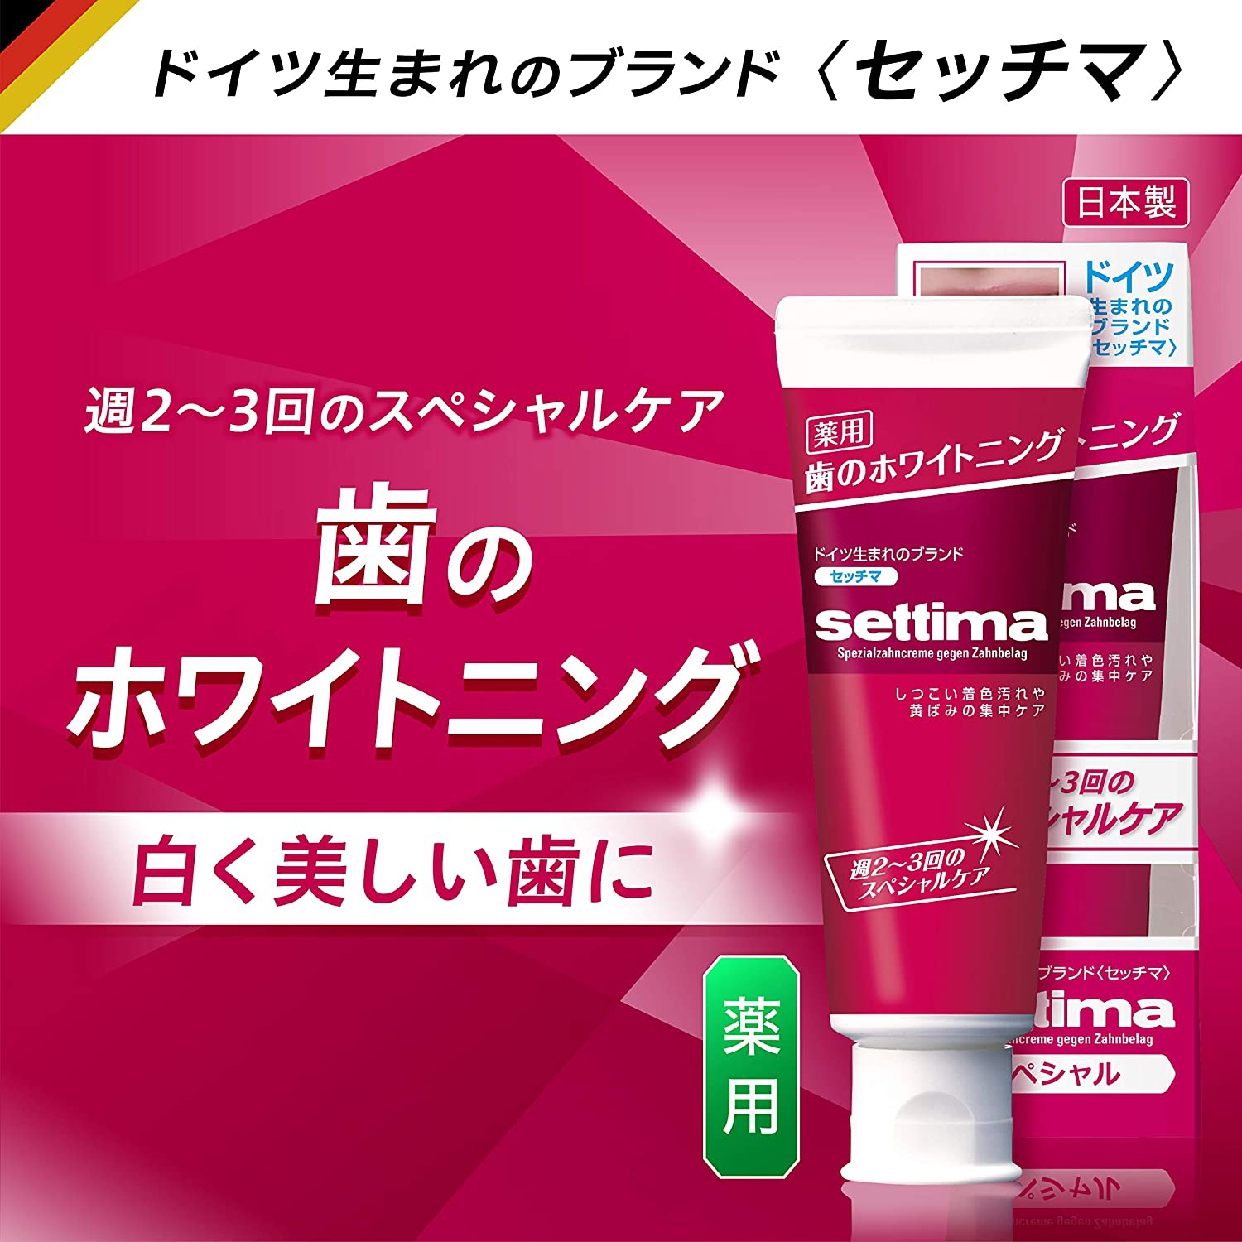 settima(セッチマ) はみがき スペシャルの商品画像サムネ6 